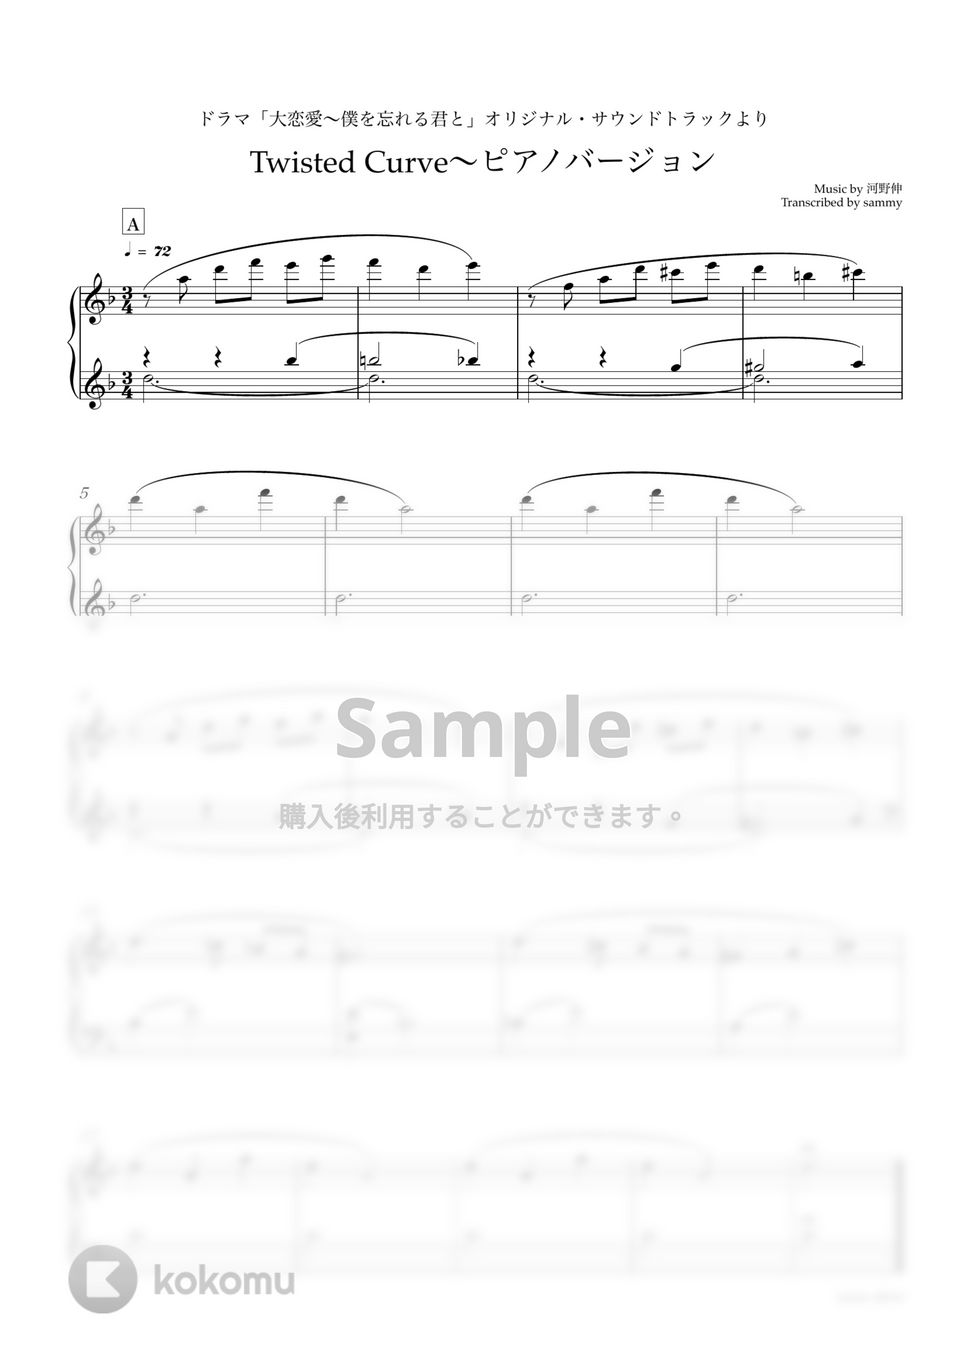 『大恋愛〜僕を忘れる君と』 - Twisted Curve 〜ピアノバージョン by sammy